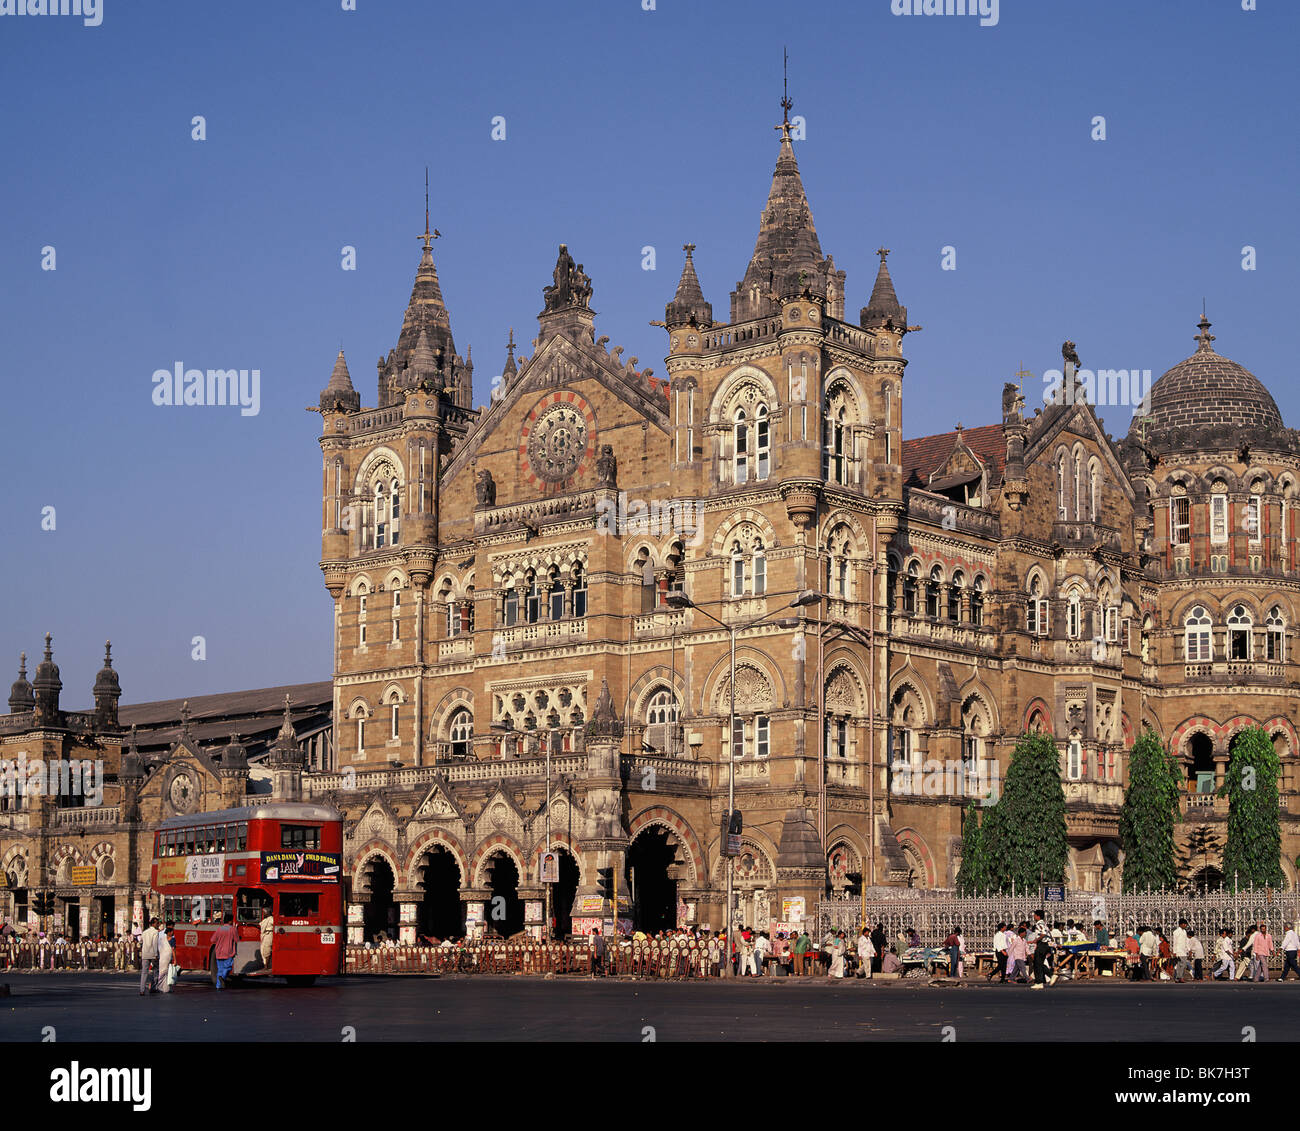 La gare de Mumbai (Victoria Terminus) Chhatrapati Shivaji (), site du patrimoine mondial de l'UNESCO, de l'Inde, l'Asie Banque D'Images